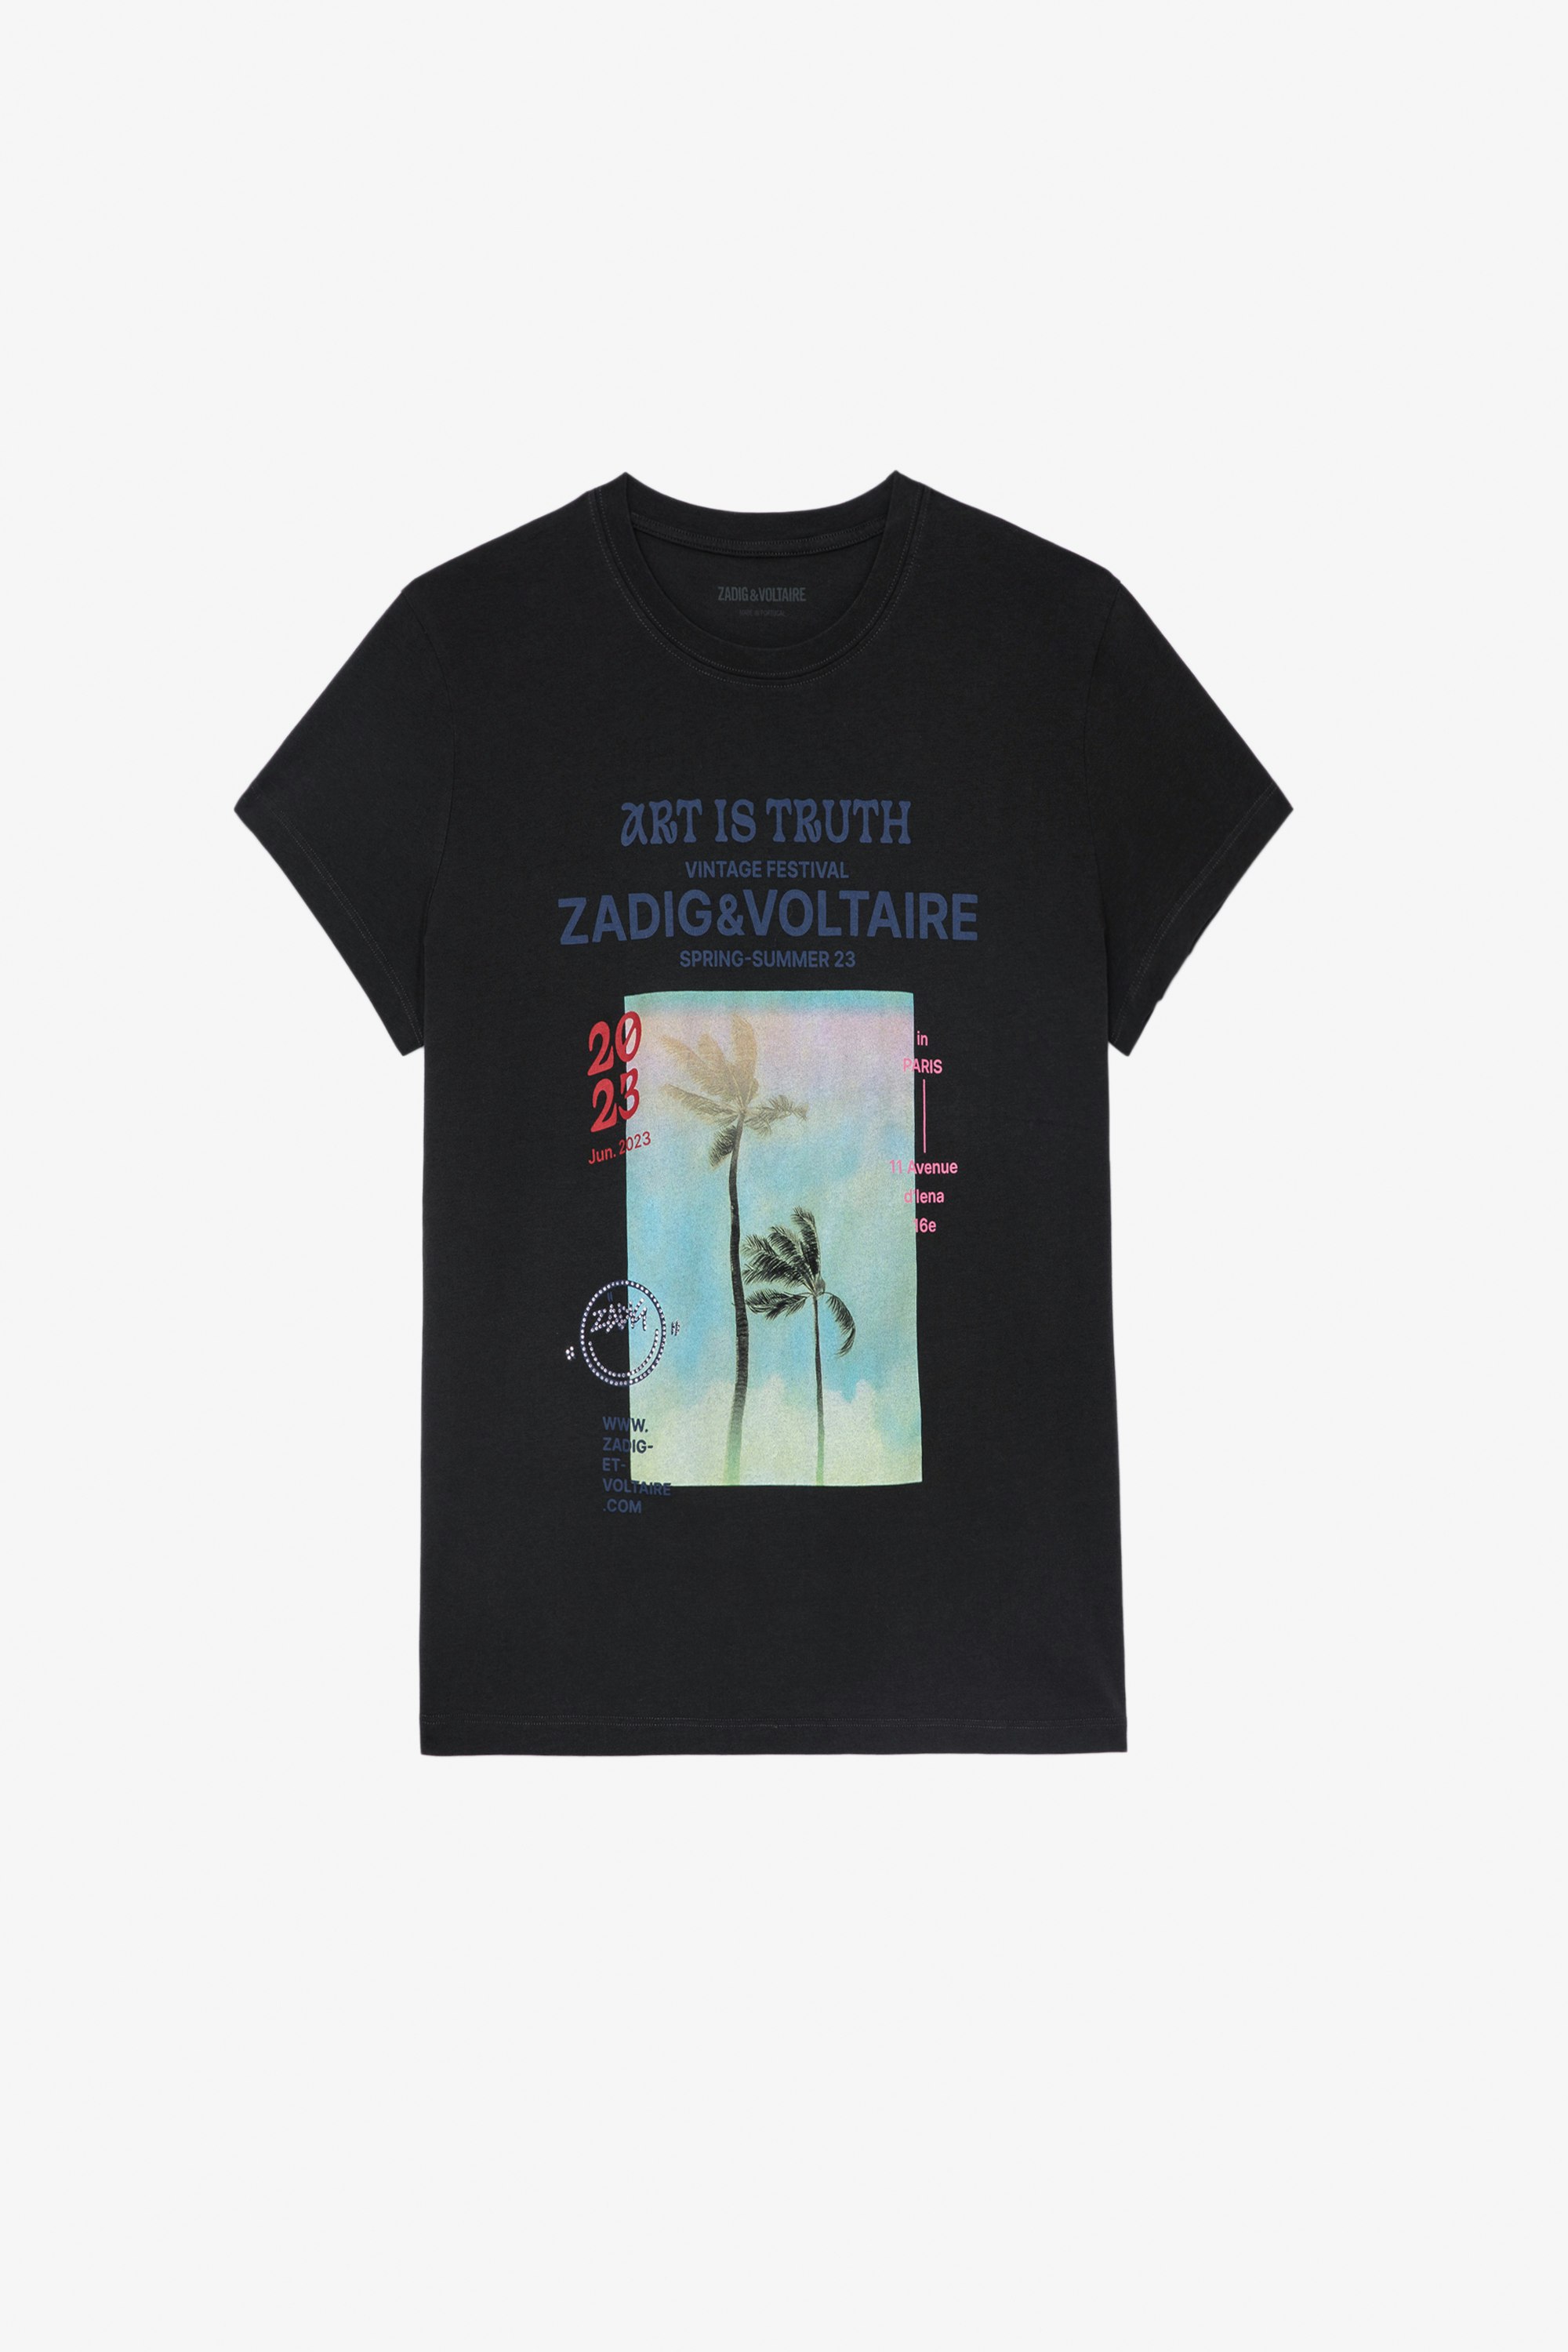 Zoe T-Shirt グレーコットン パームツリーフロントフォトプリント Tシャツ レディース